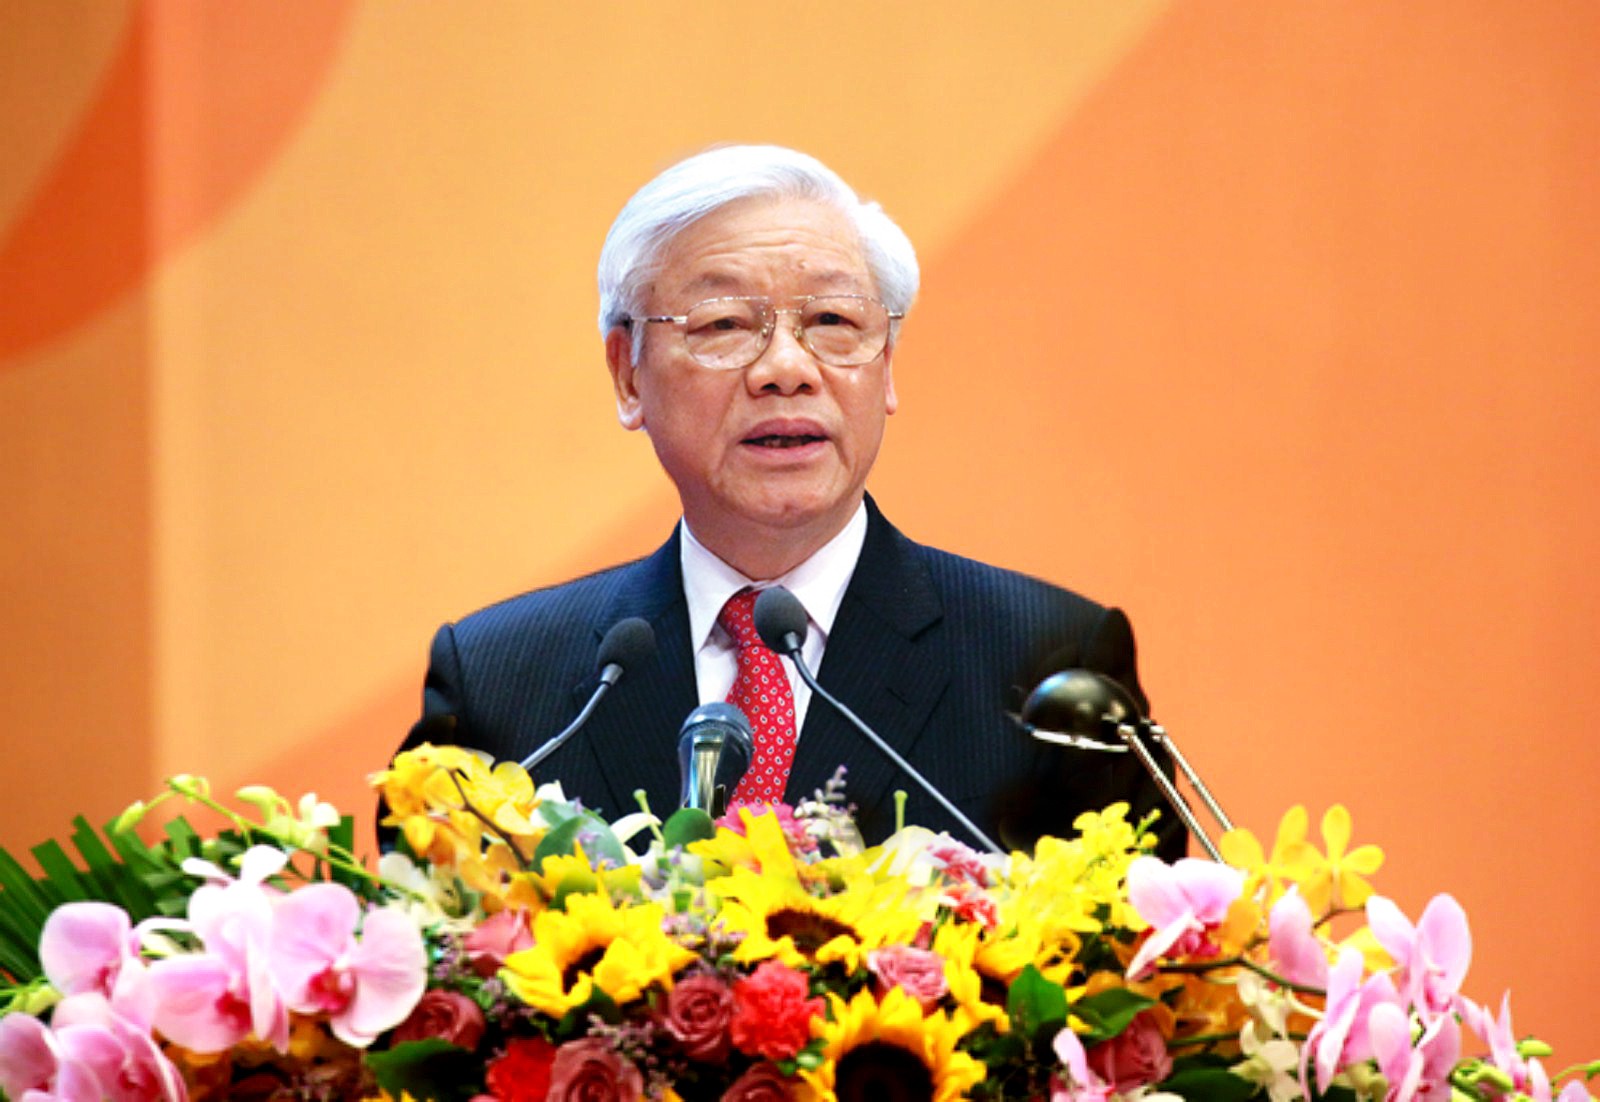 Bài viết của Tổng Bí thư Nguyễn Phú Trọng nhân kỷ niệm 94 năm Ngày thành lập Đảng- Ảnh 1.